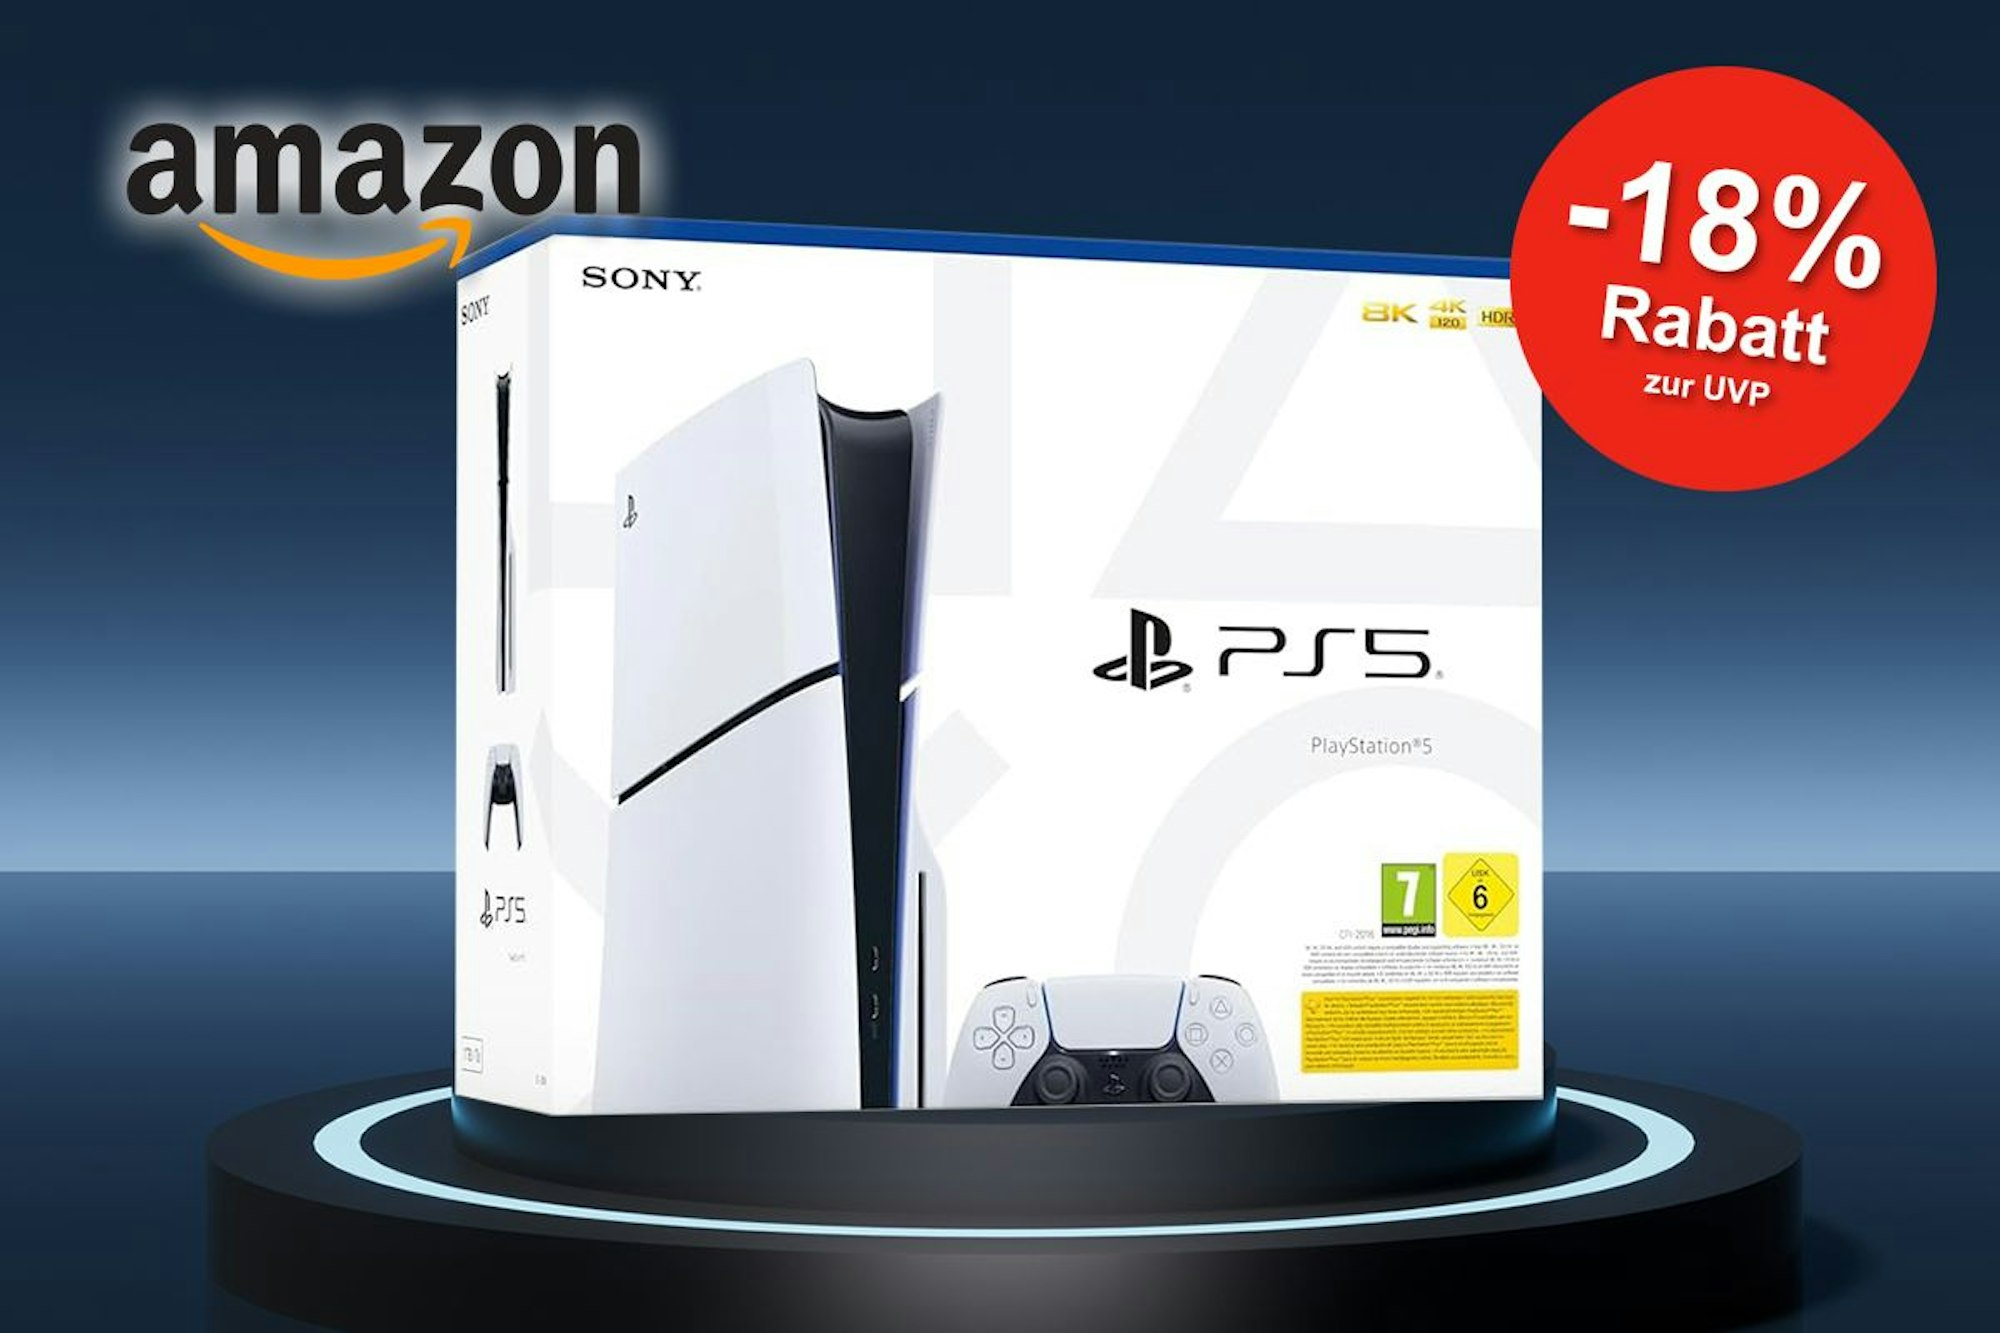 Sichere dir jetzt 18% Rabatt auf die Sony Playstation 5 bei Amazon! 